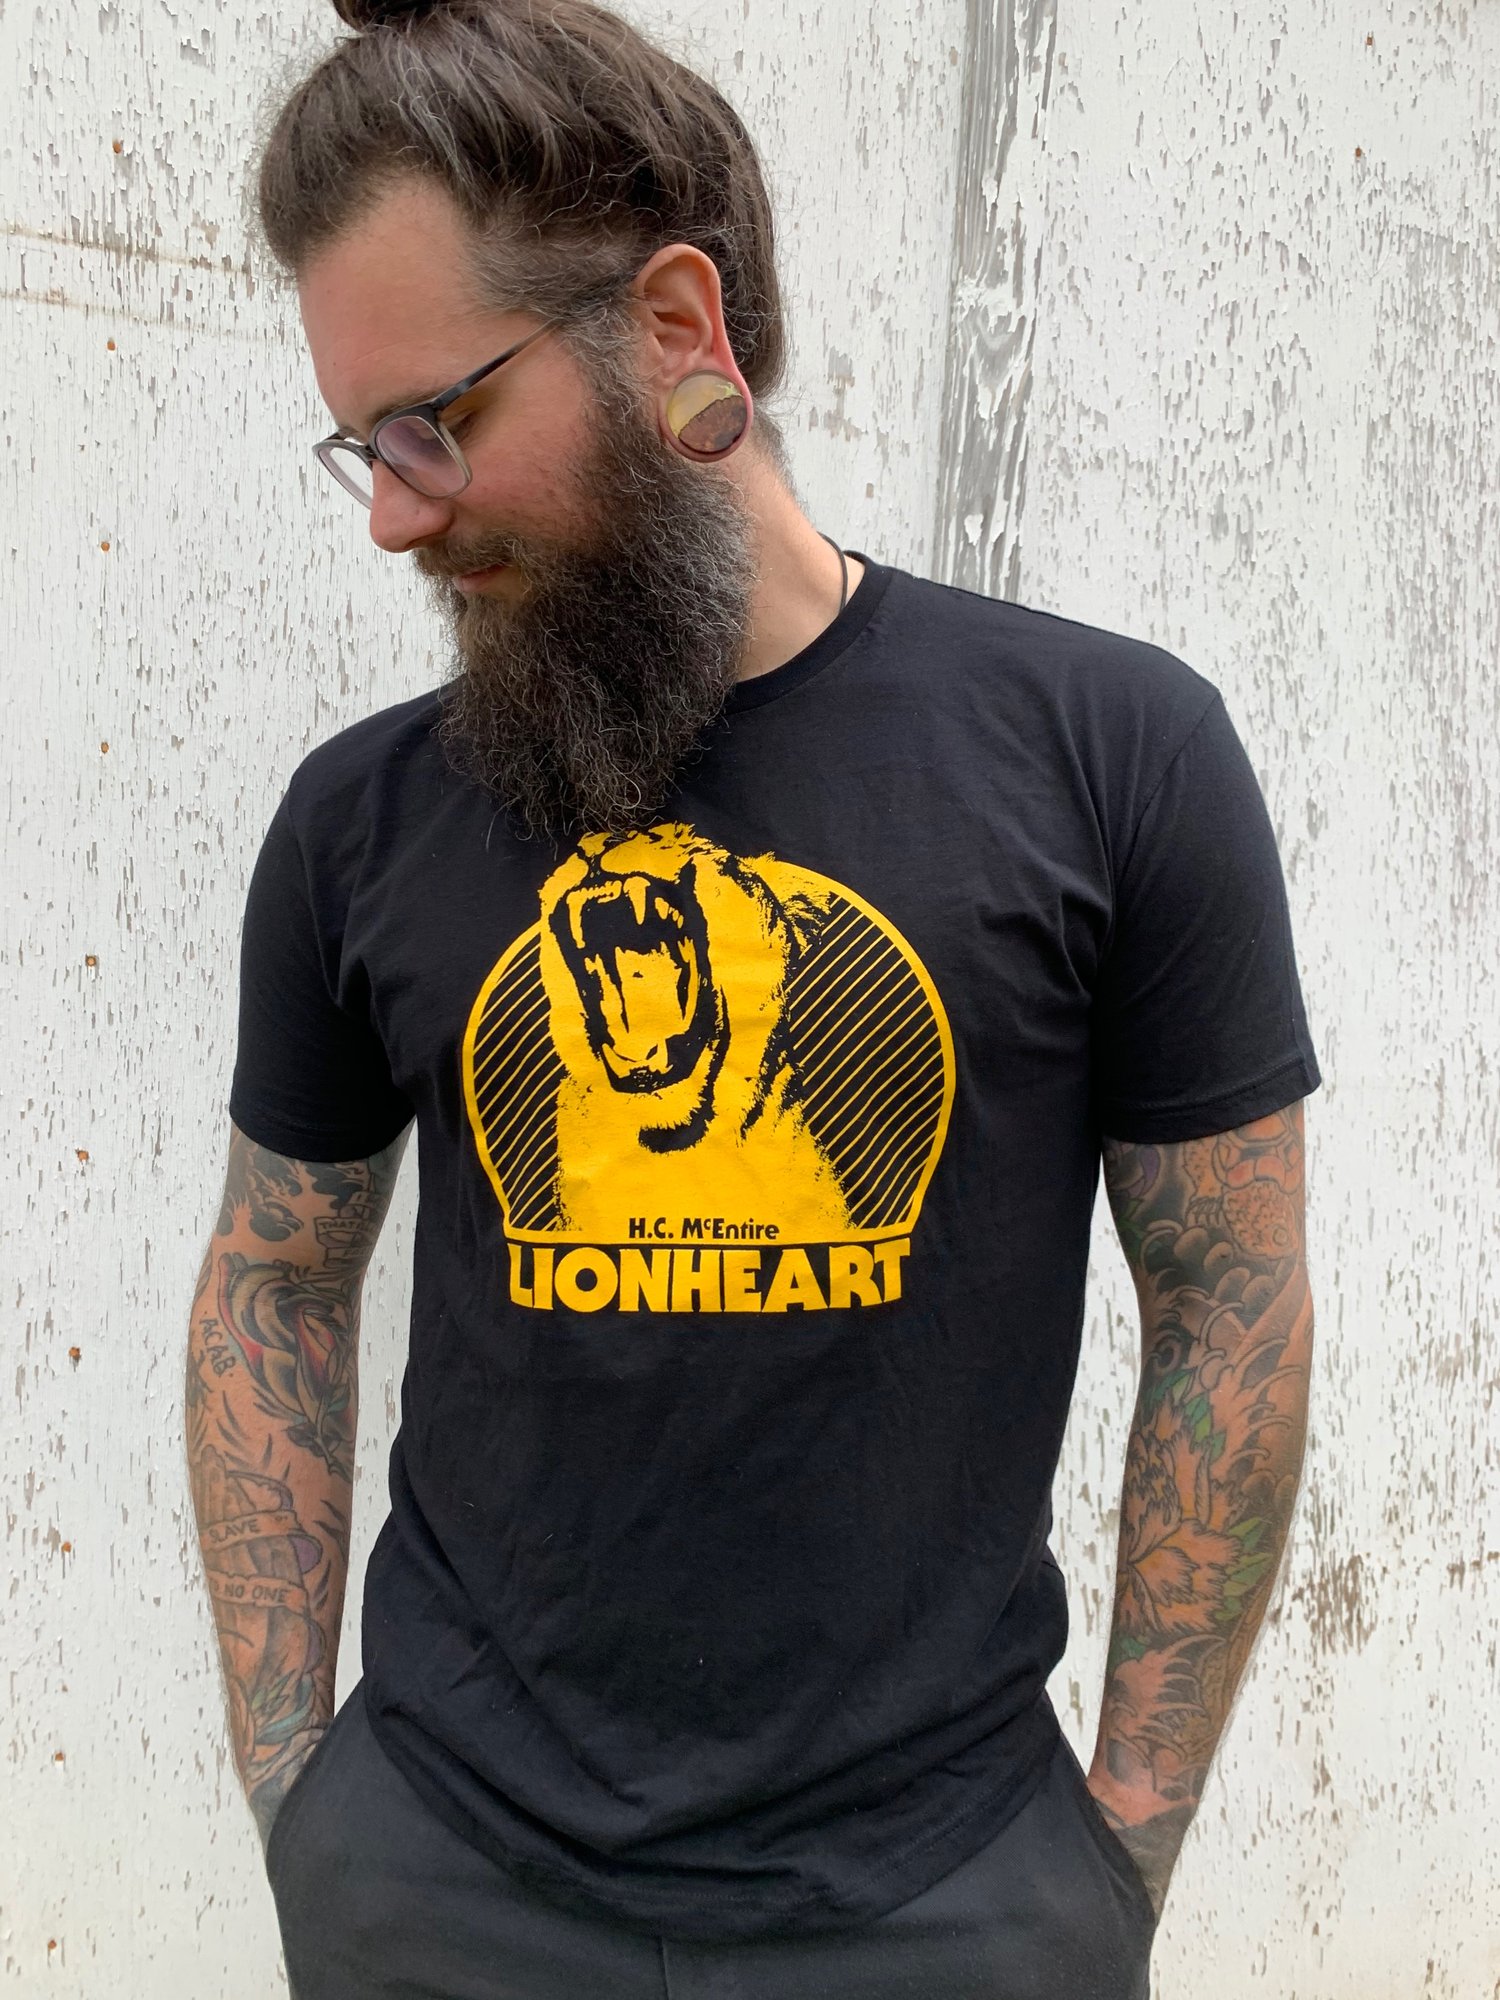 Image of H.C. McEntire "LIONHEART" t-shirt